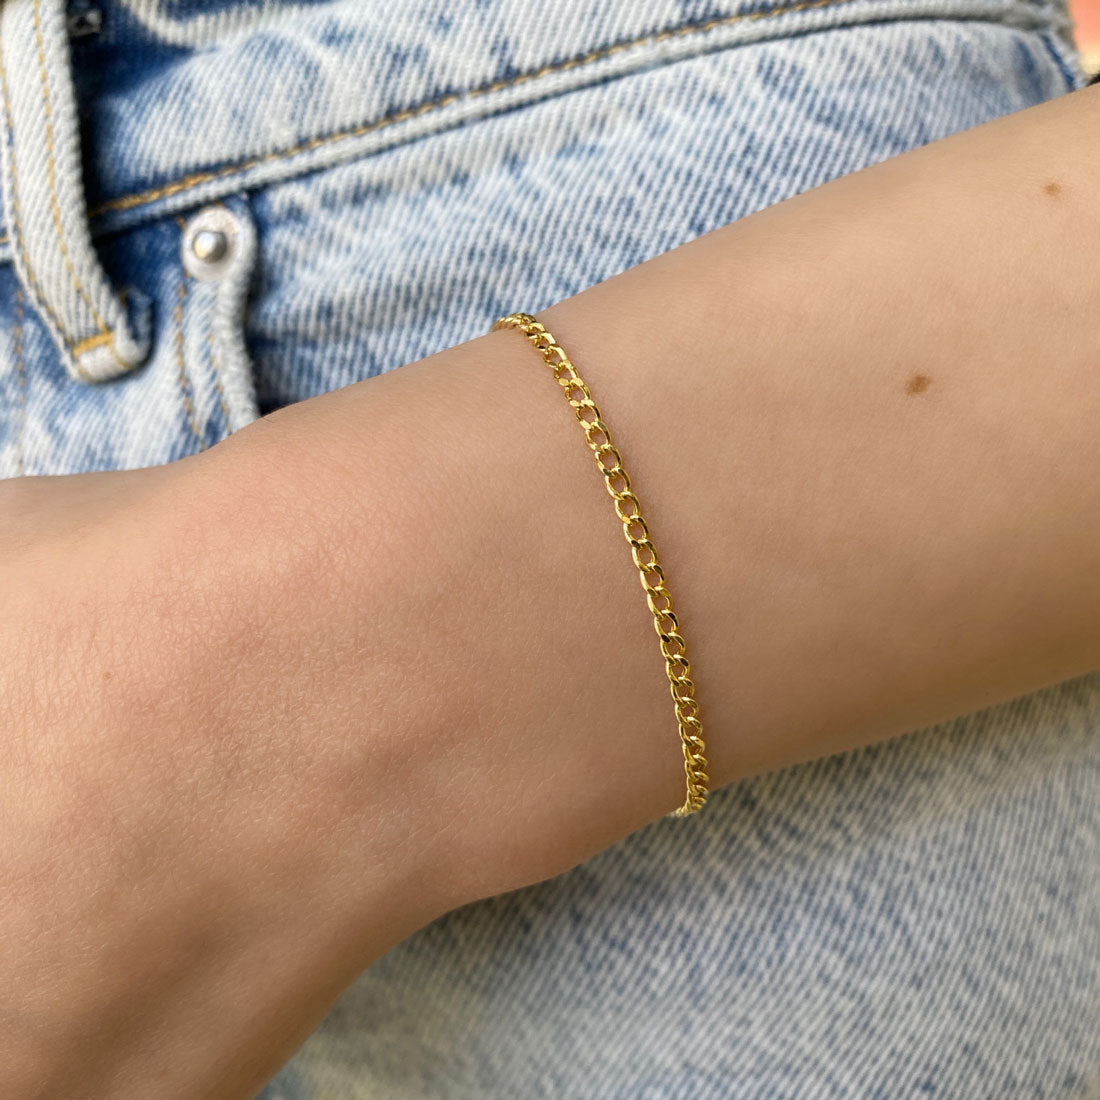 Buy JHB Golden Gold-Plated Brass Bracelet 3 pis Combo for Women And Girl's  (3 Pis Golden Bracelet) at Amazon.in